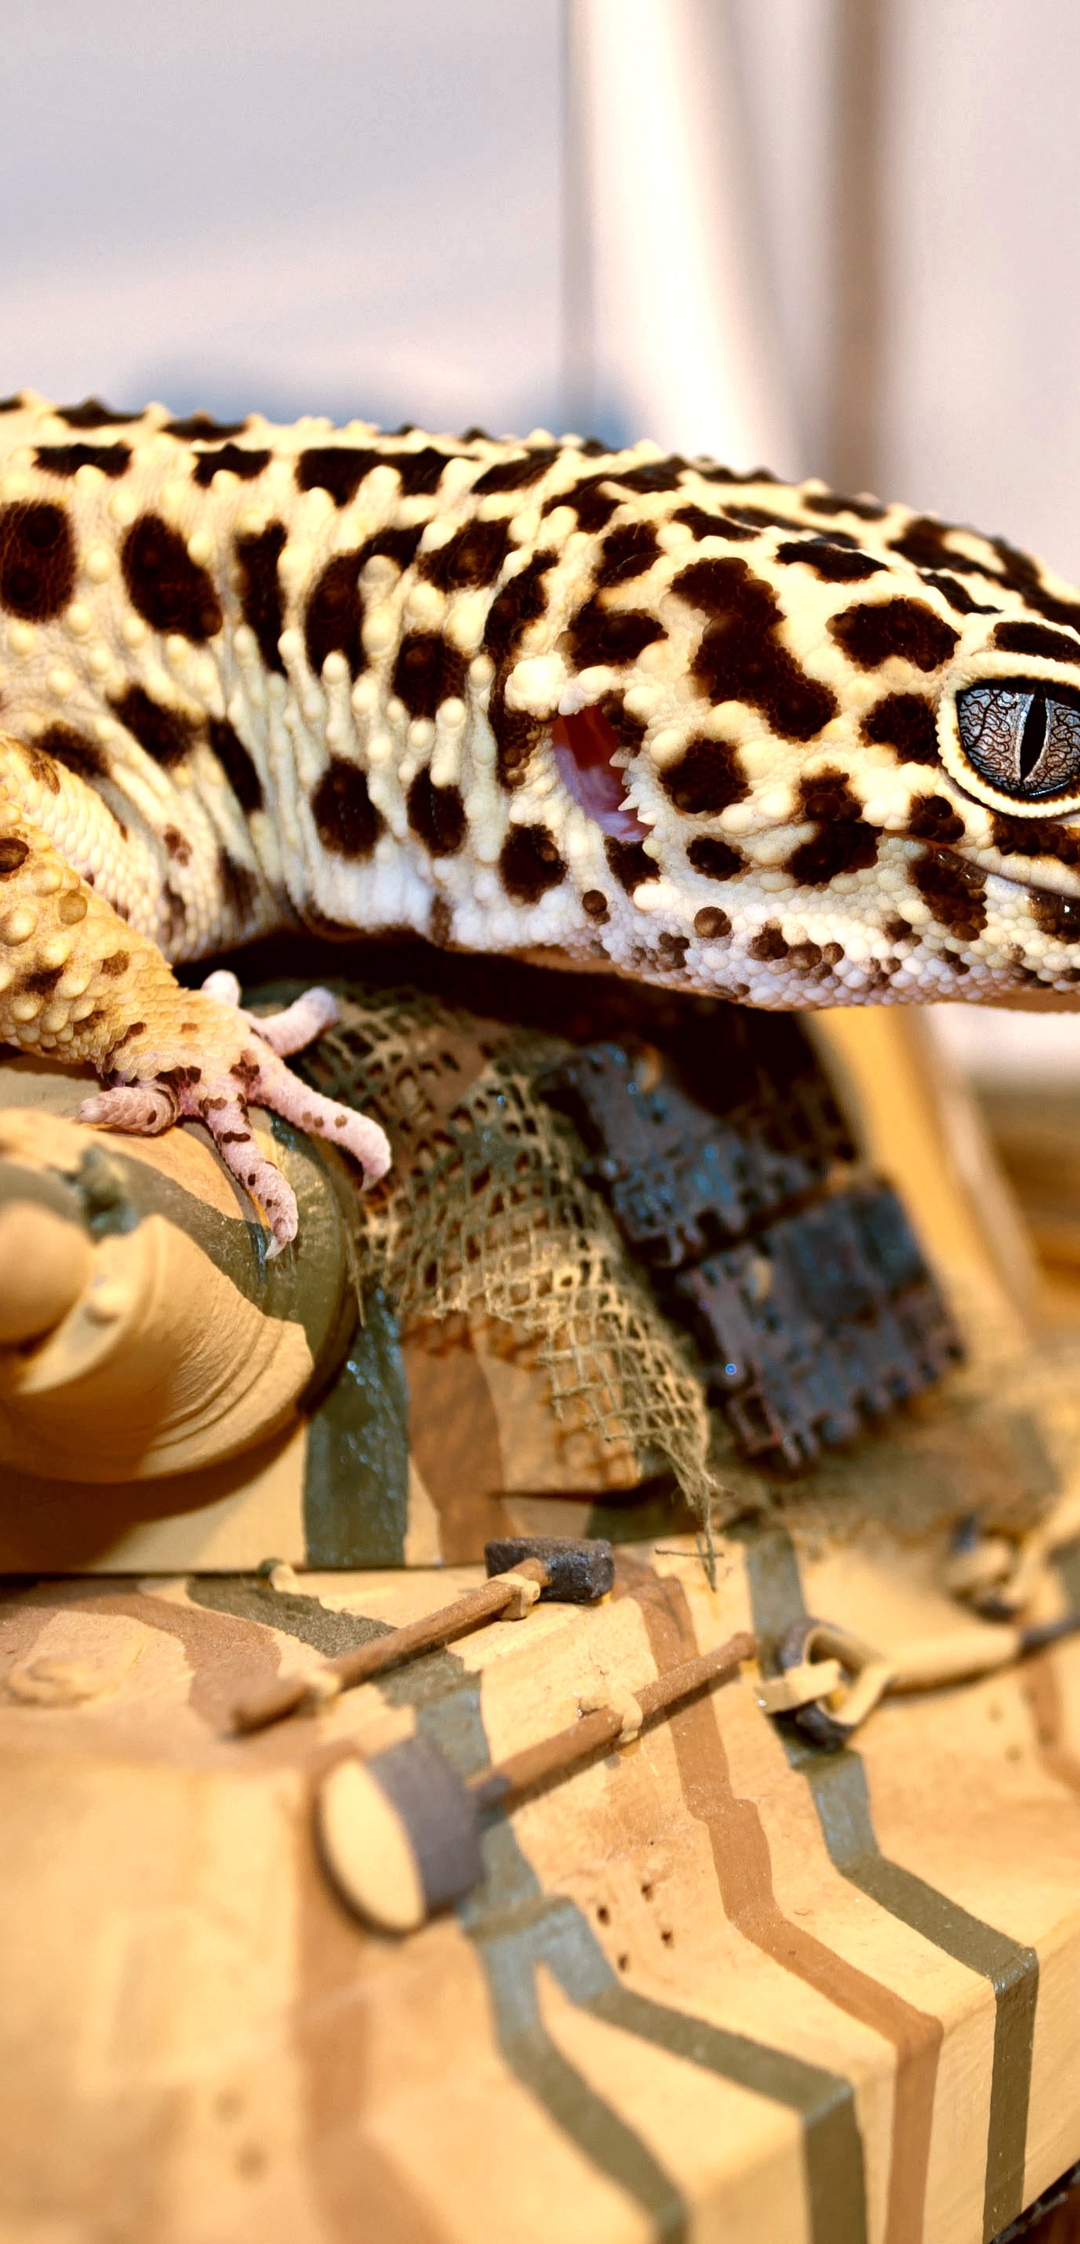 Image: Gecko, lizard, spots, tank